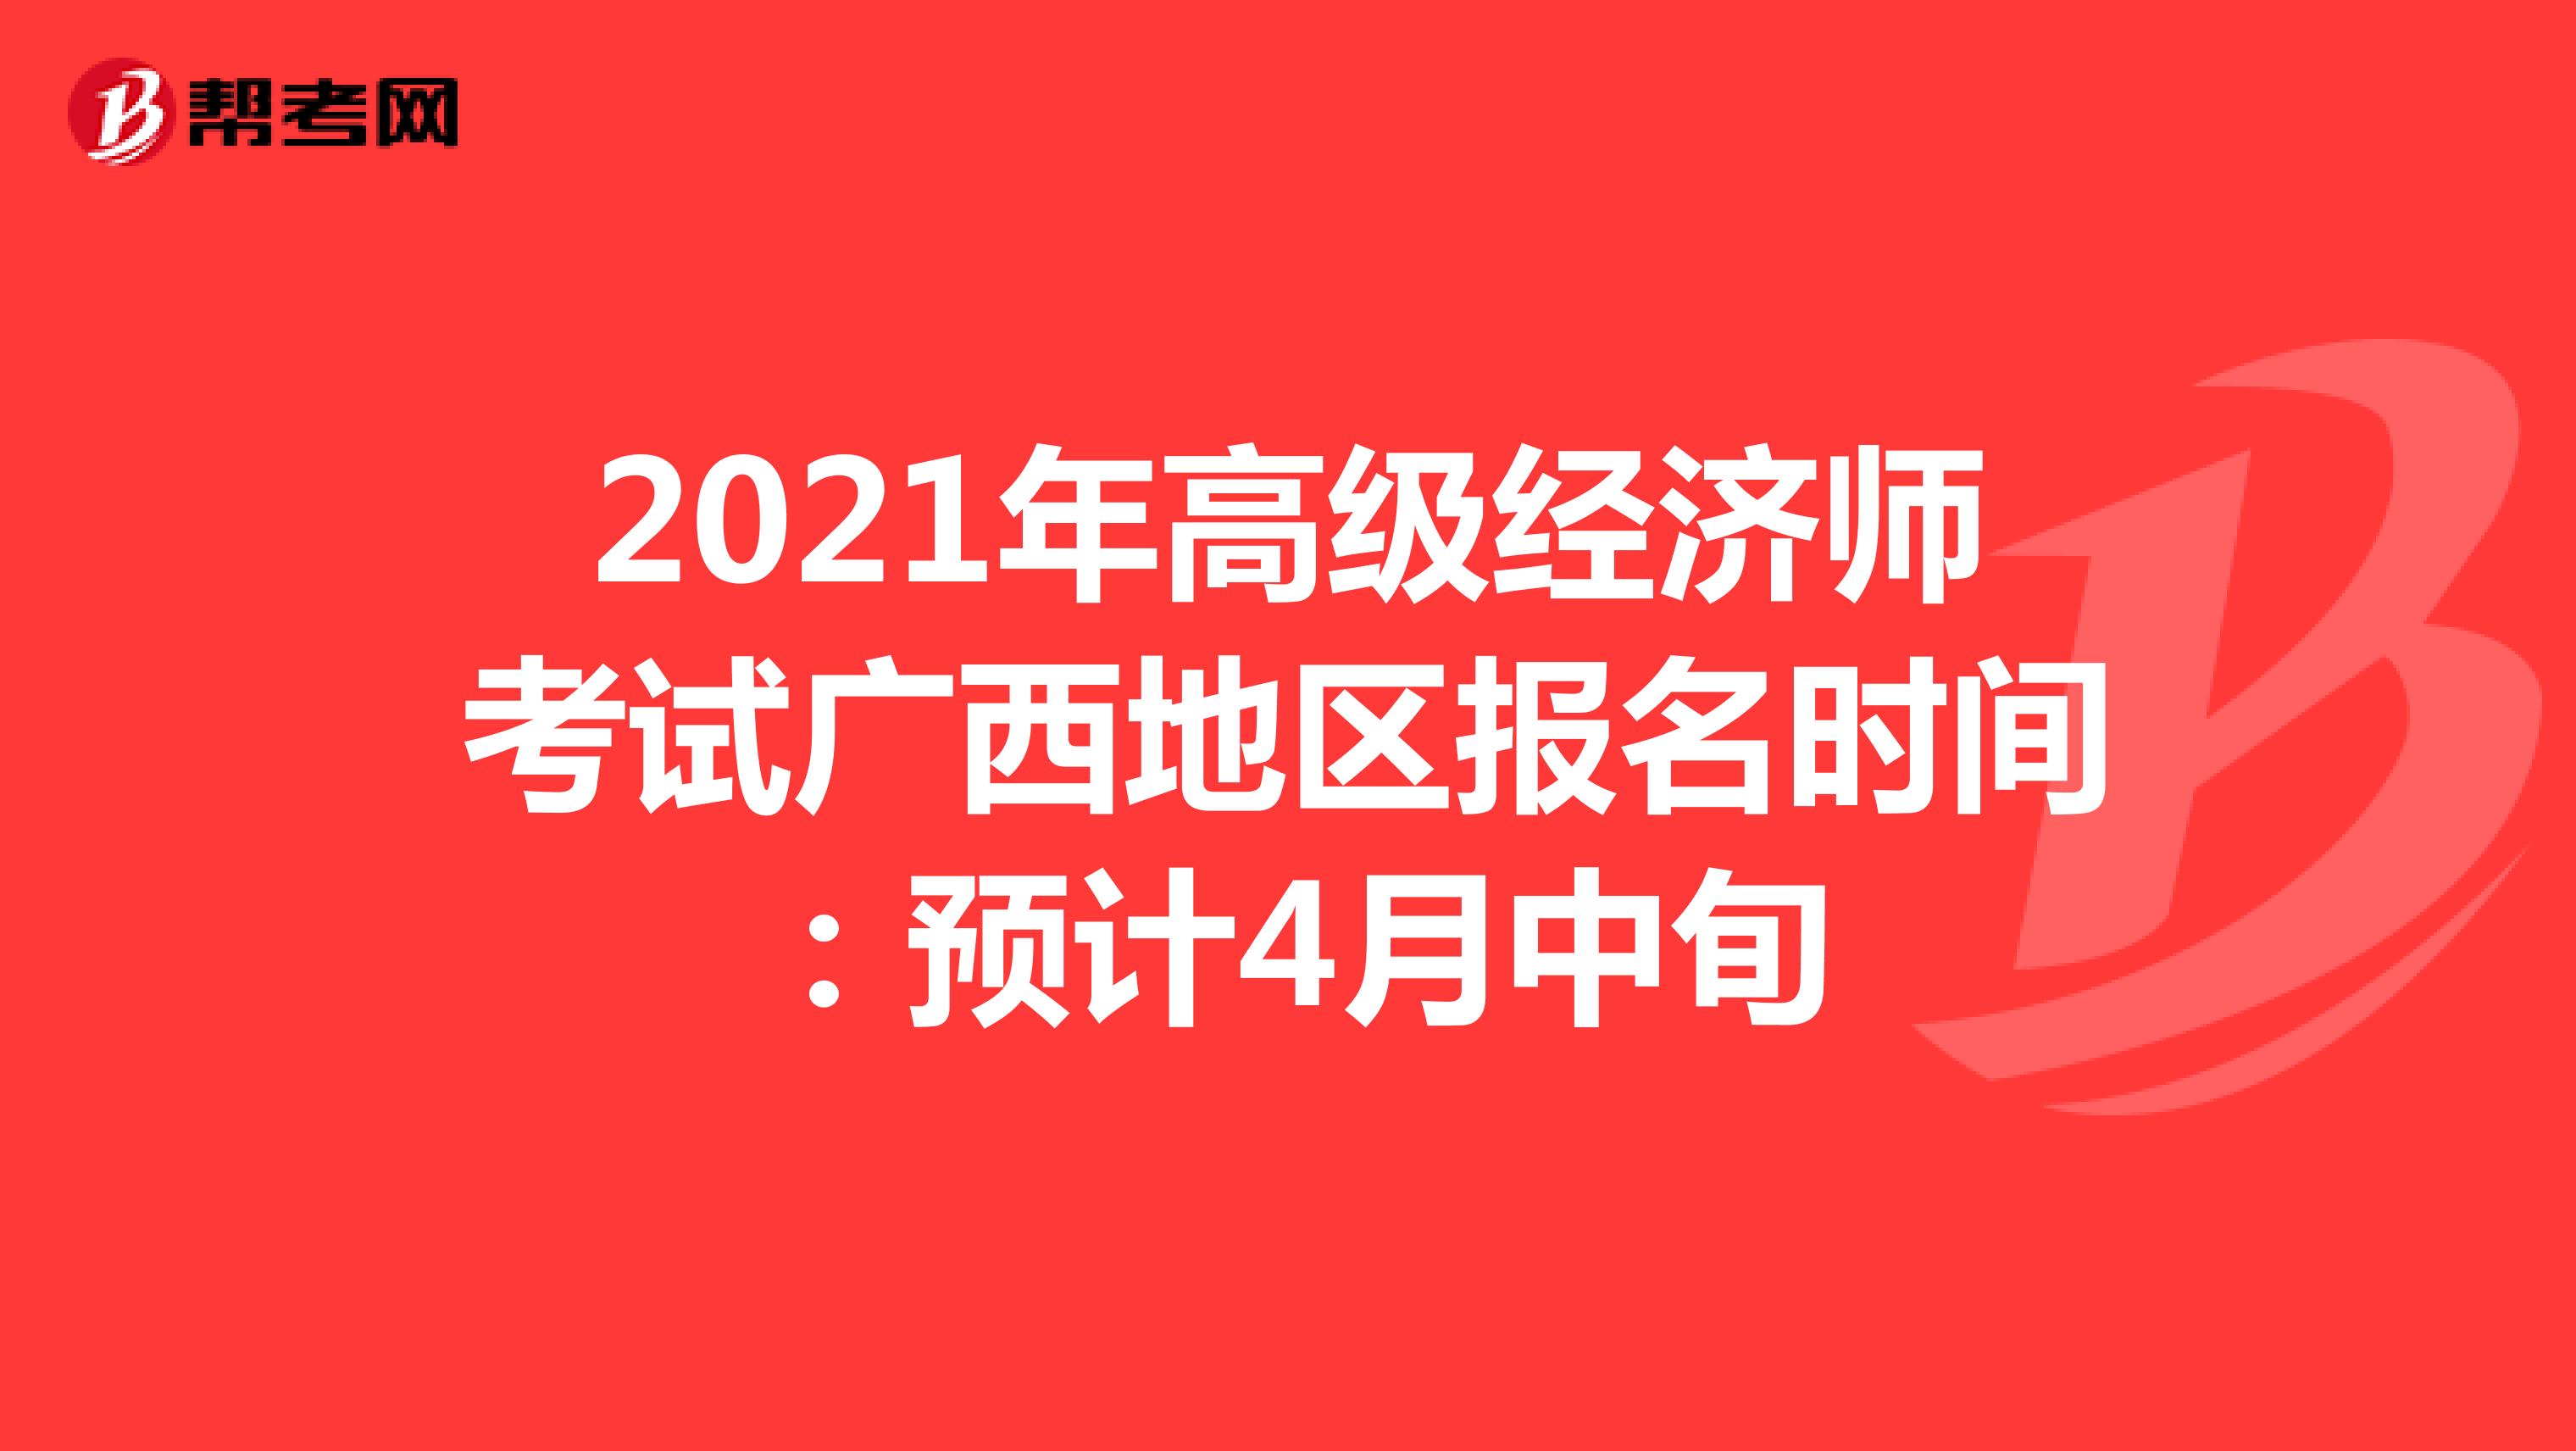 2021年高级经济师考试广西地区报名时间：预计4月中旬